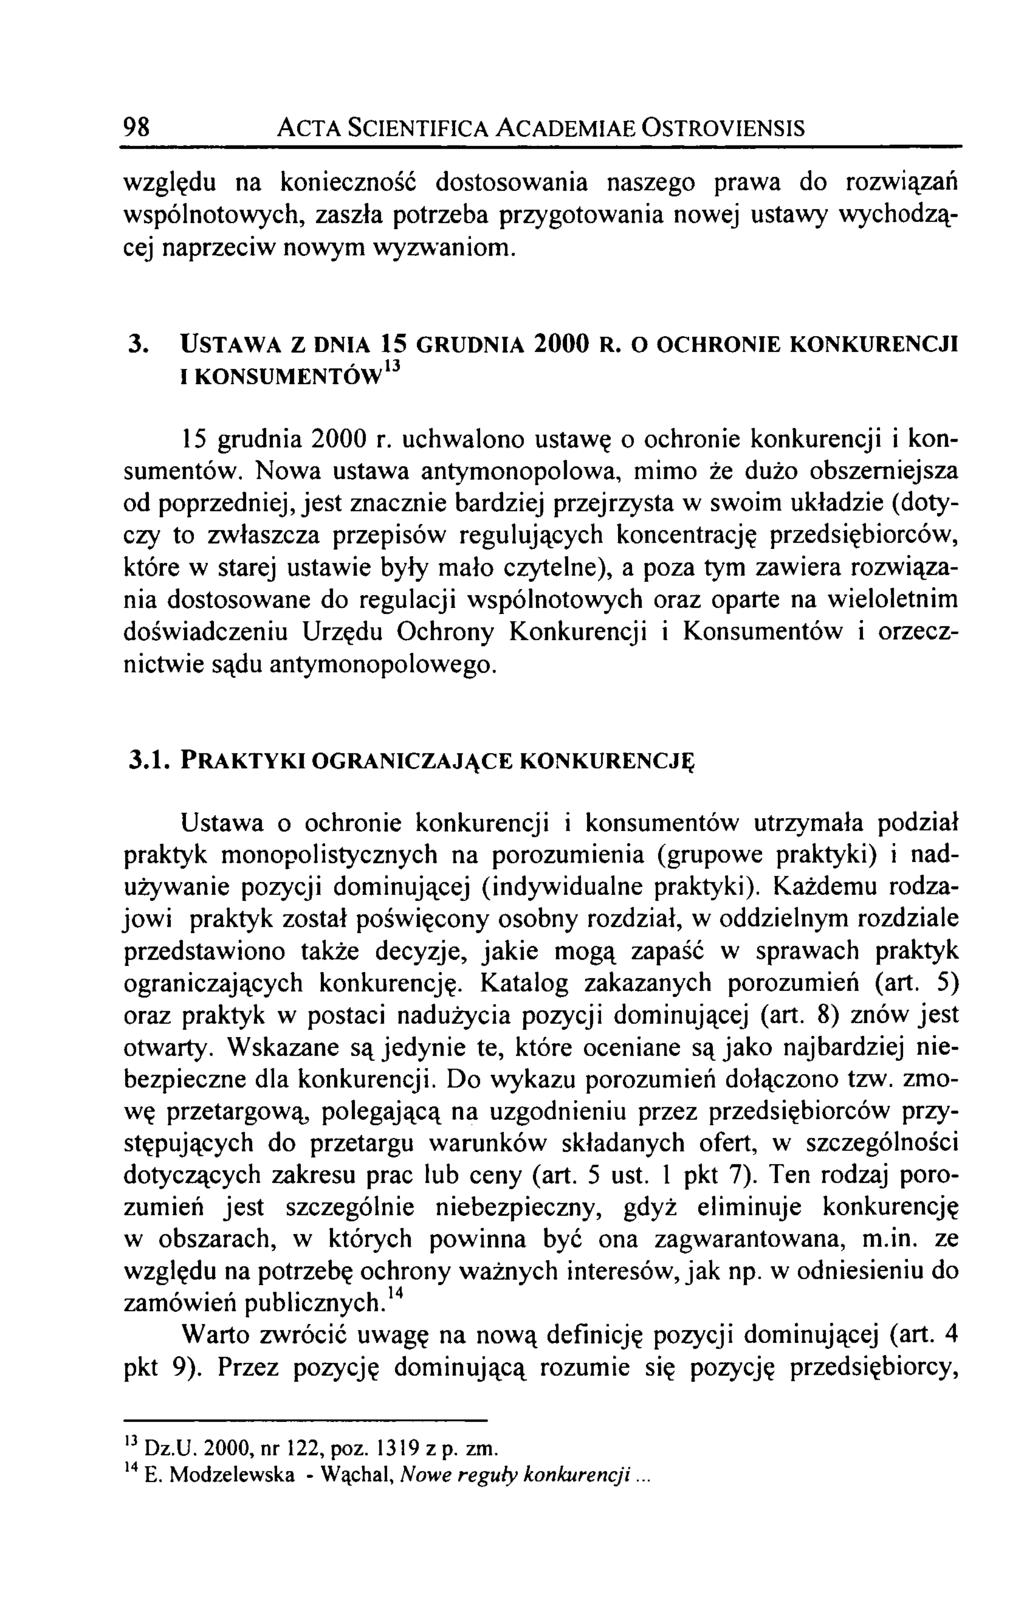 98 Acta Scientifica Academiae Ostroyiensis względu na konieczność dostosowania naszego prawa do rozwiązań wspólnotowych, zaszła potrzeba przygotowania nowej ustawy wychodzącej naprzeciw nowym